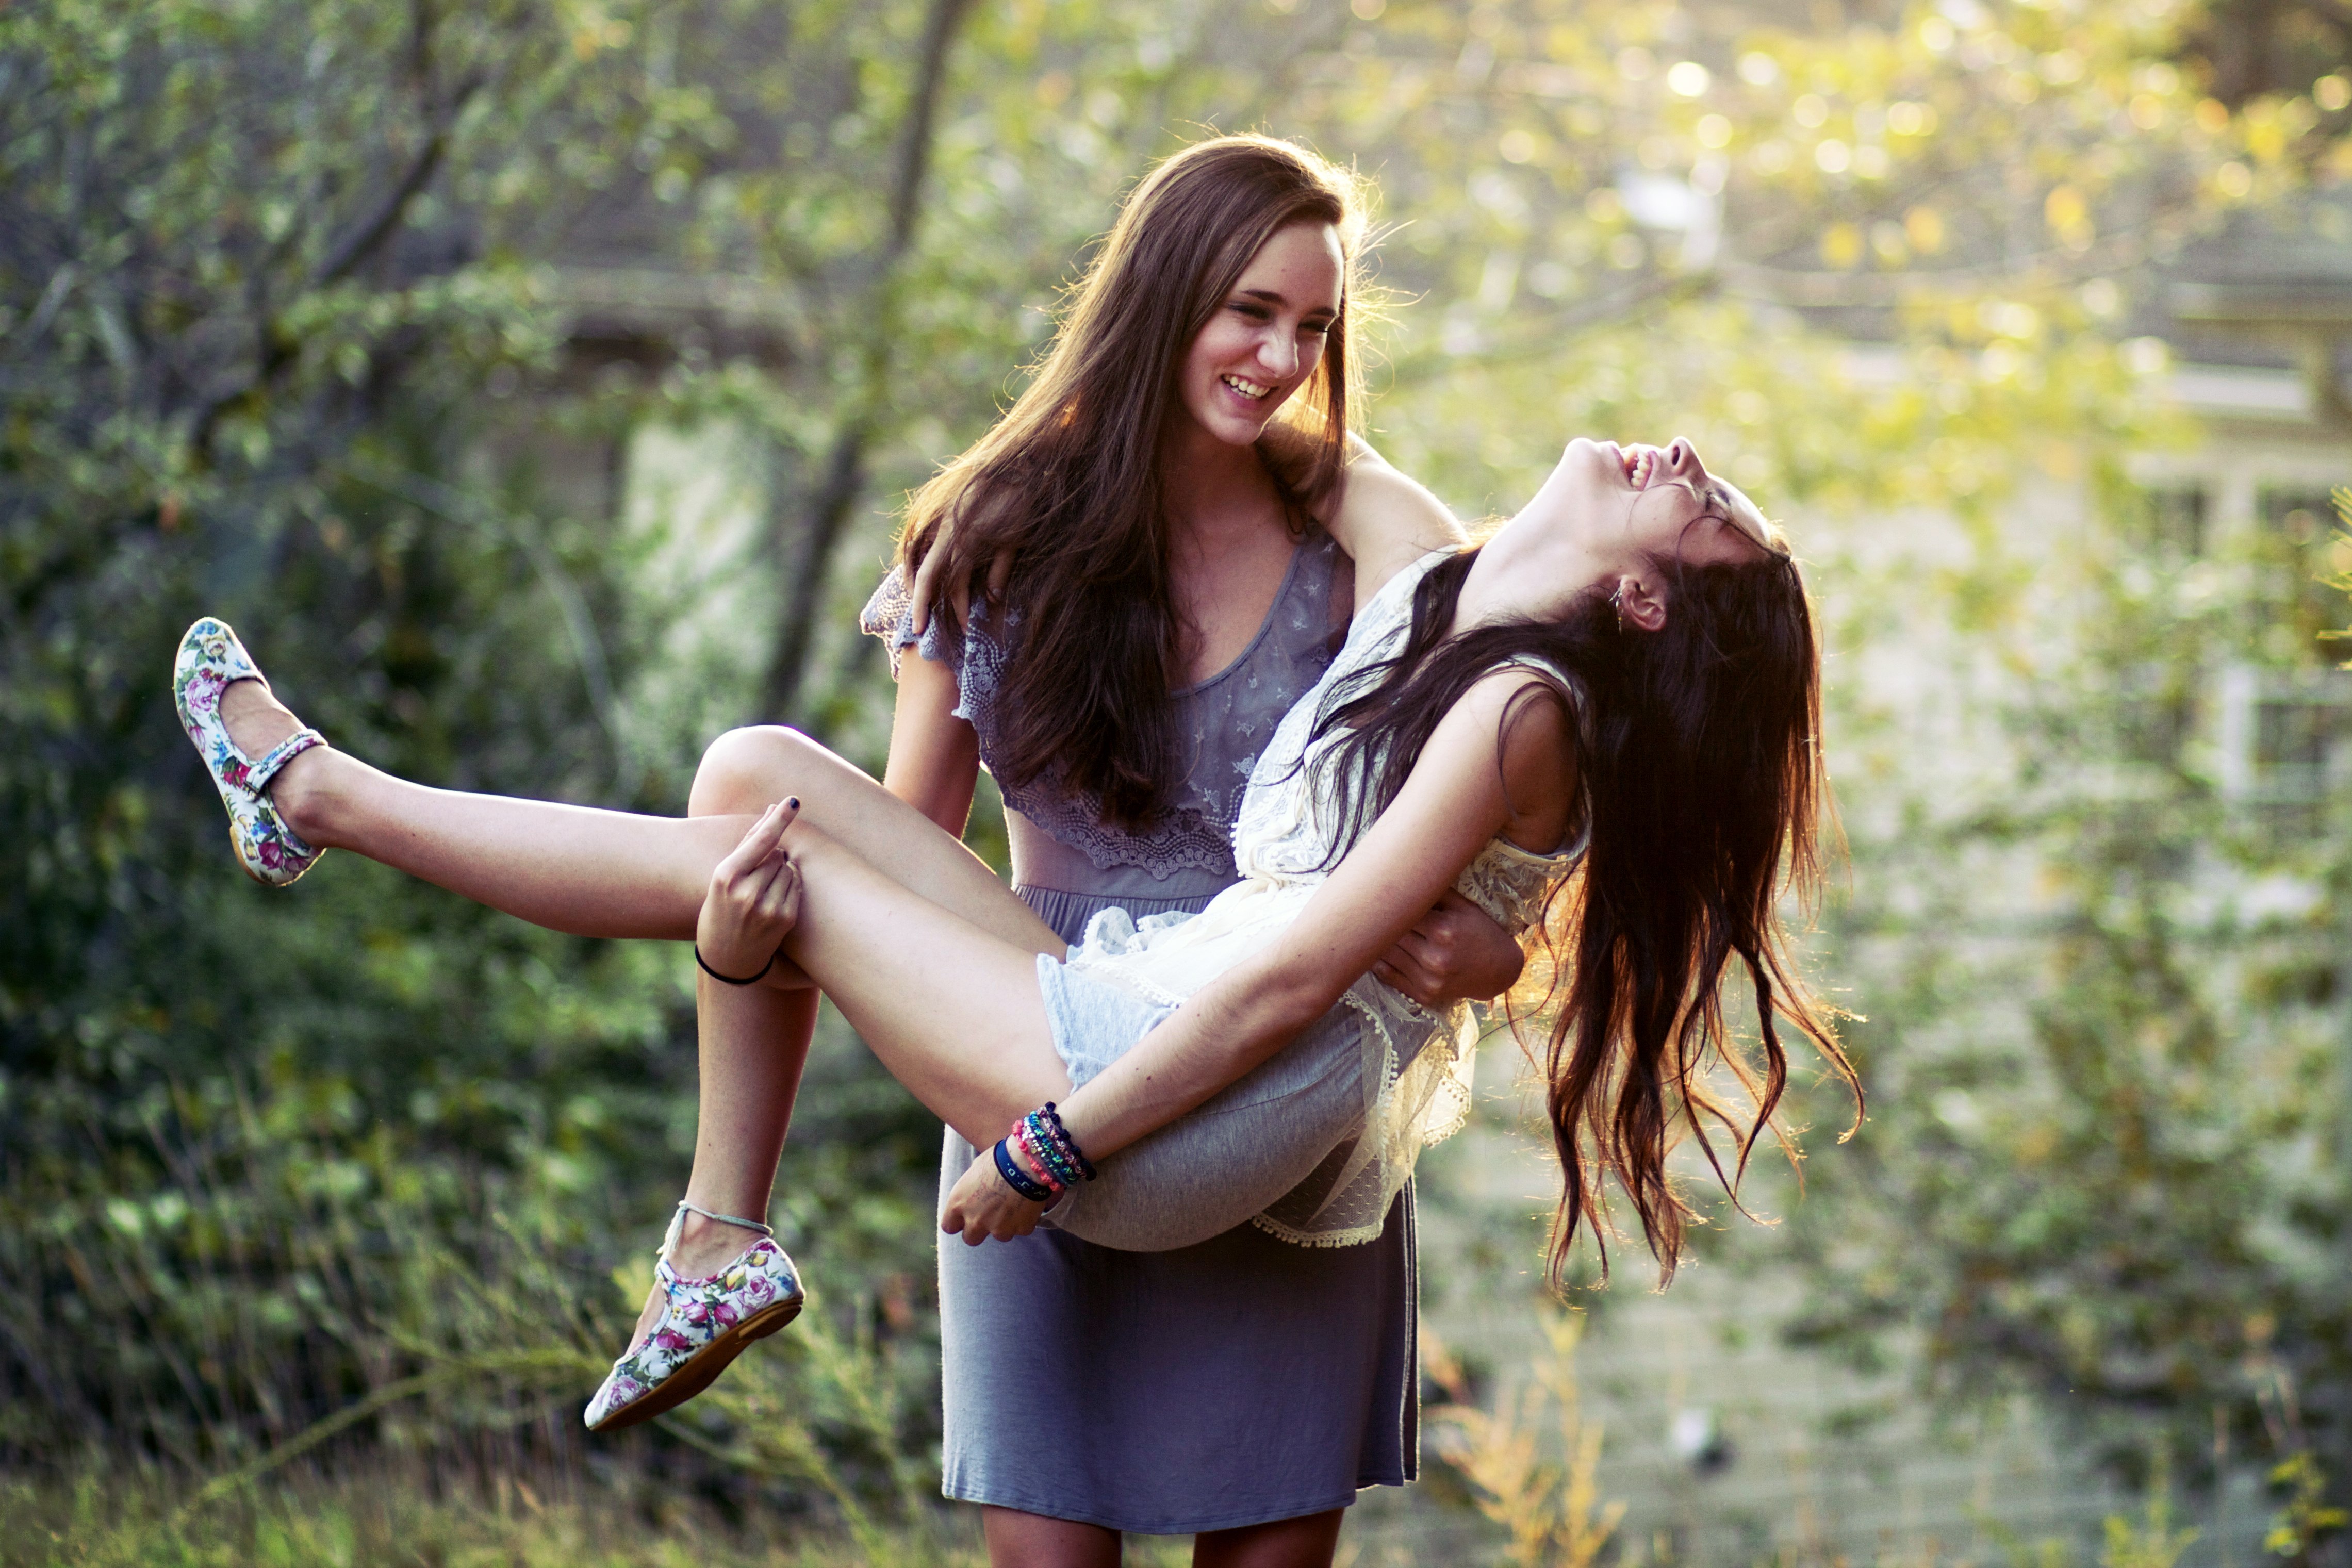 Порно онлайн - Лесбиянки поздравили подружку с днюхой испробовав на ней страпон